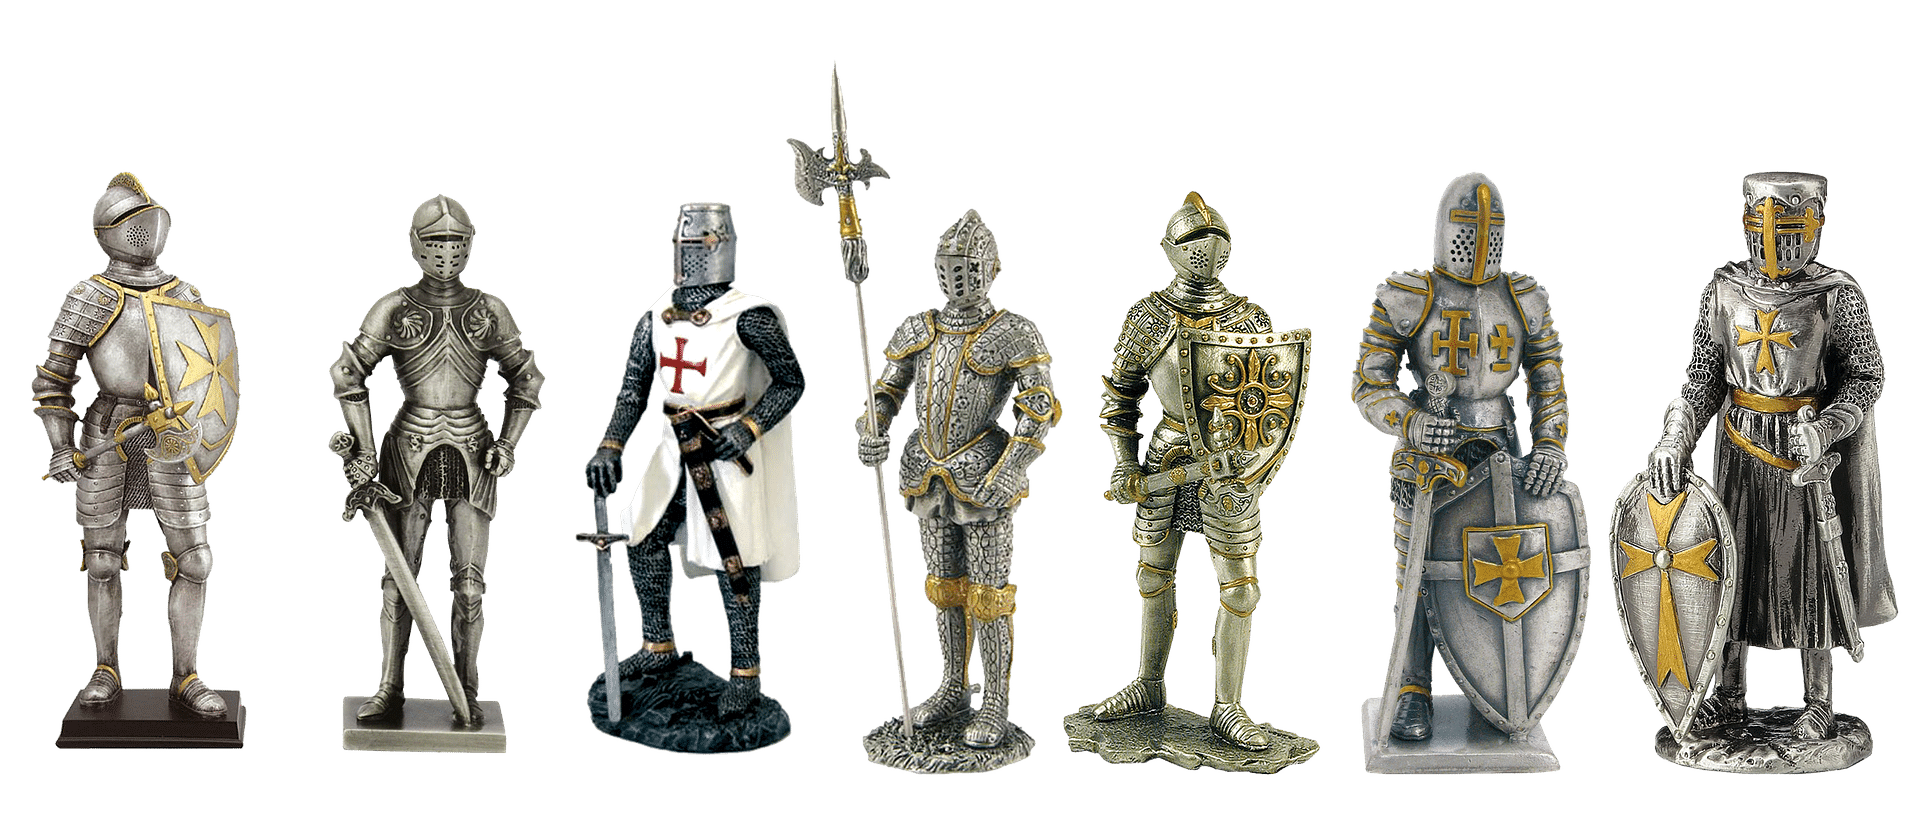 knight figurines